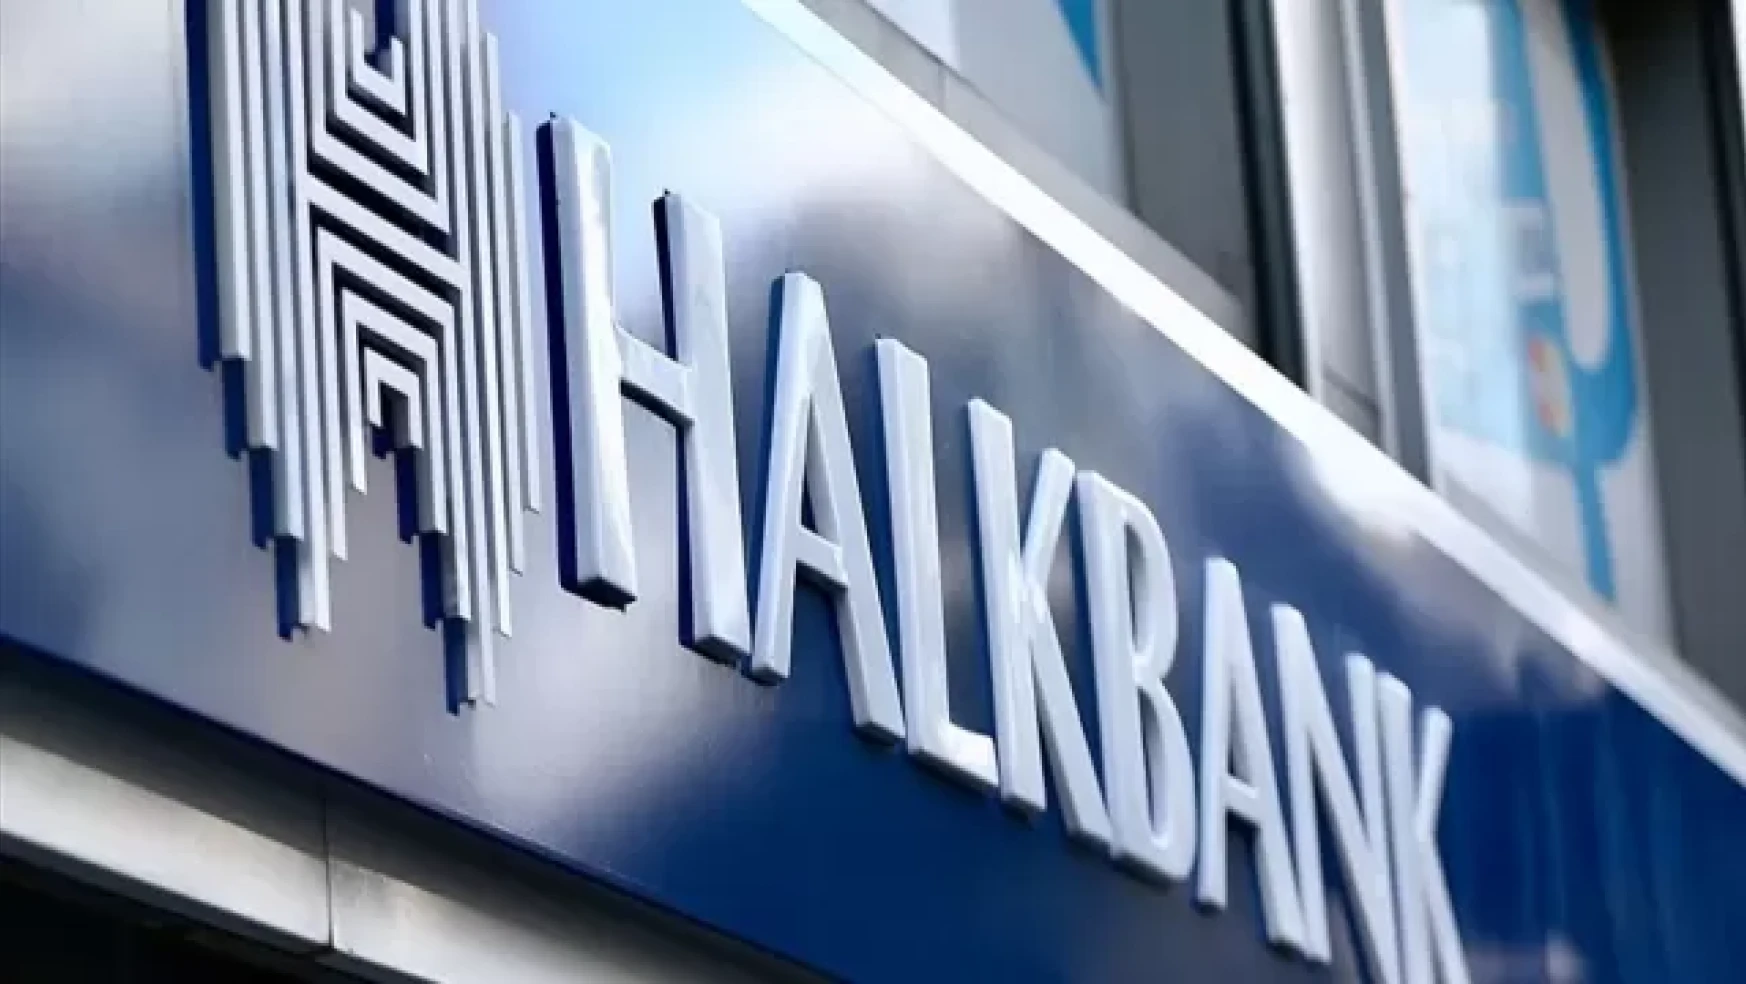 Halkbank KPSS şartsız 1375 personel alımı yapıyor! Başvuru şartları ve tarihi belli oldu